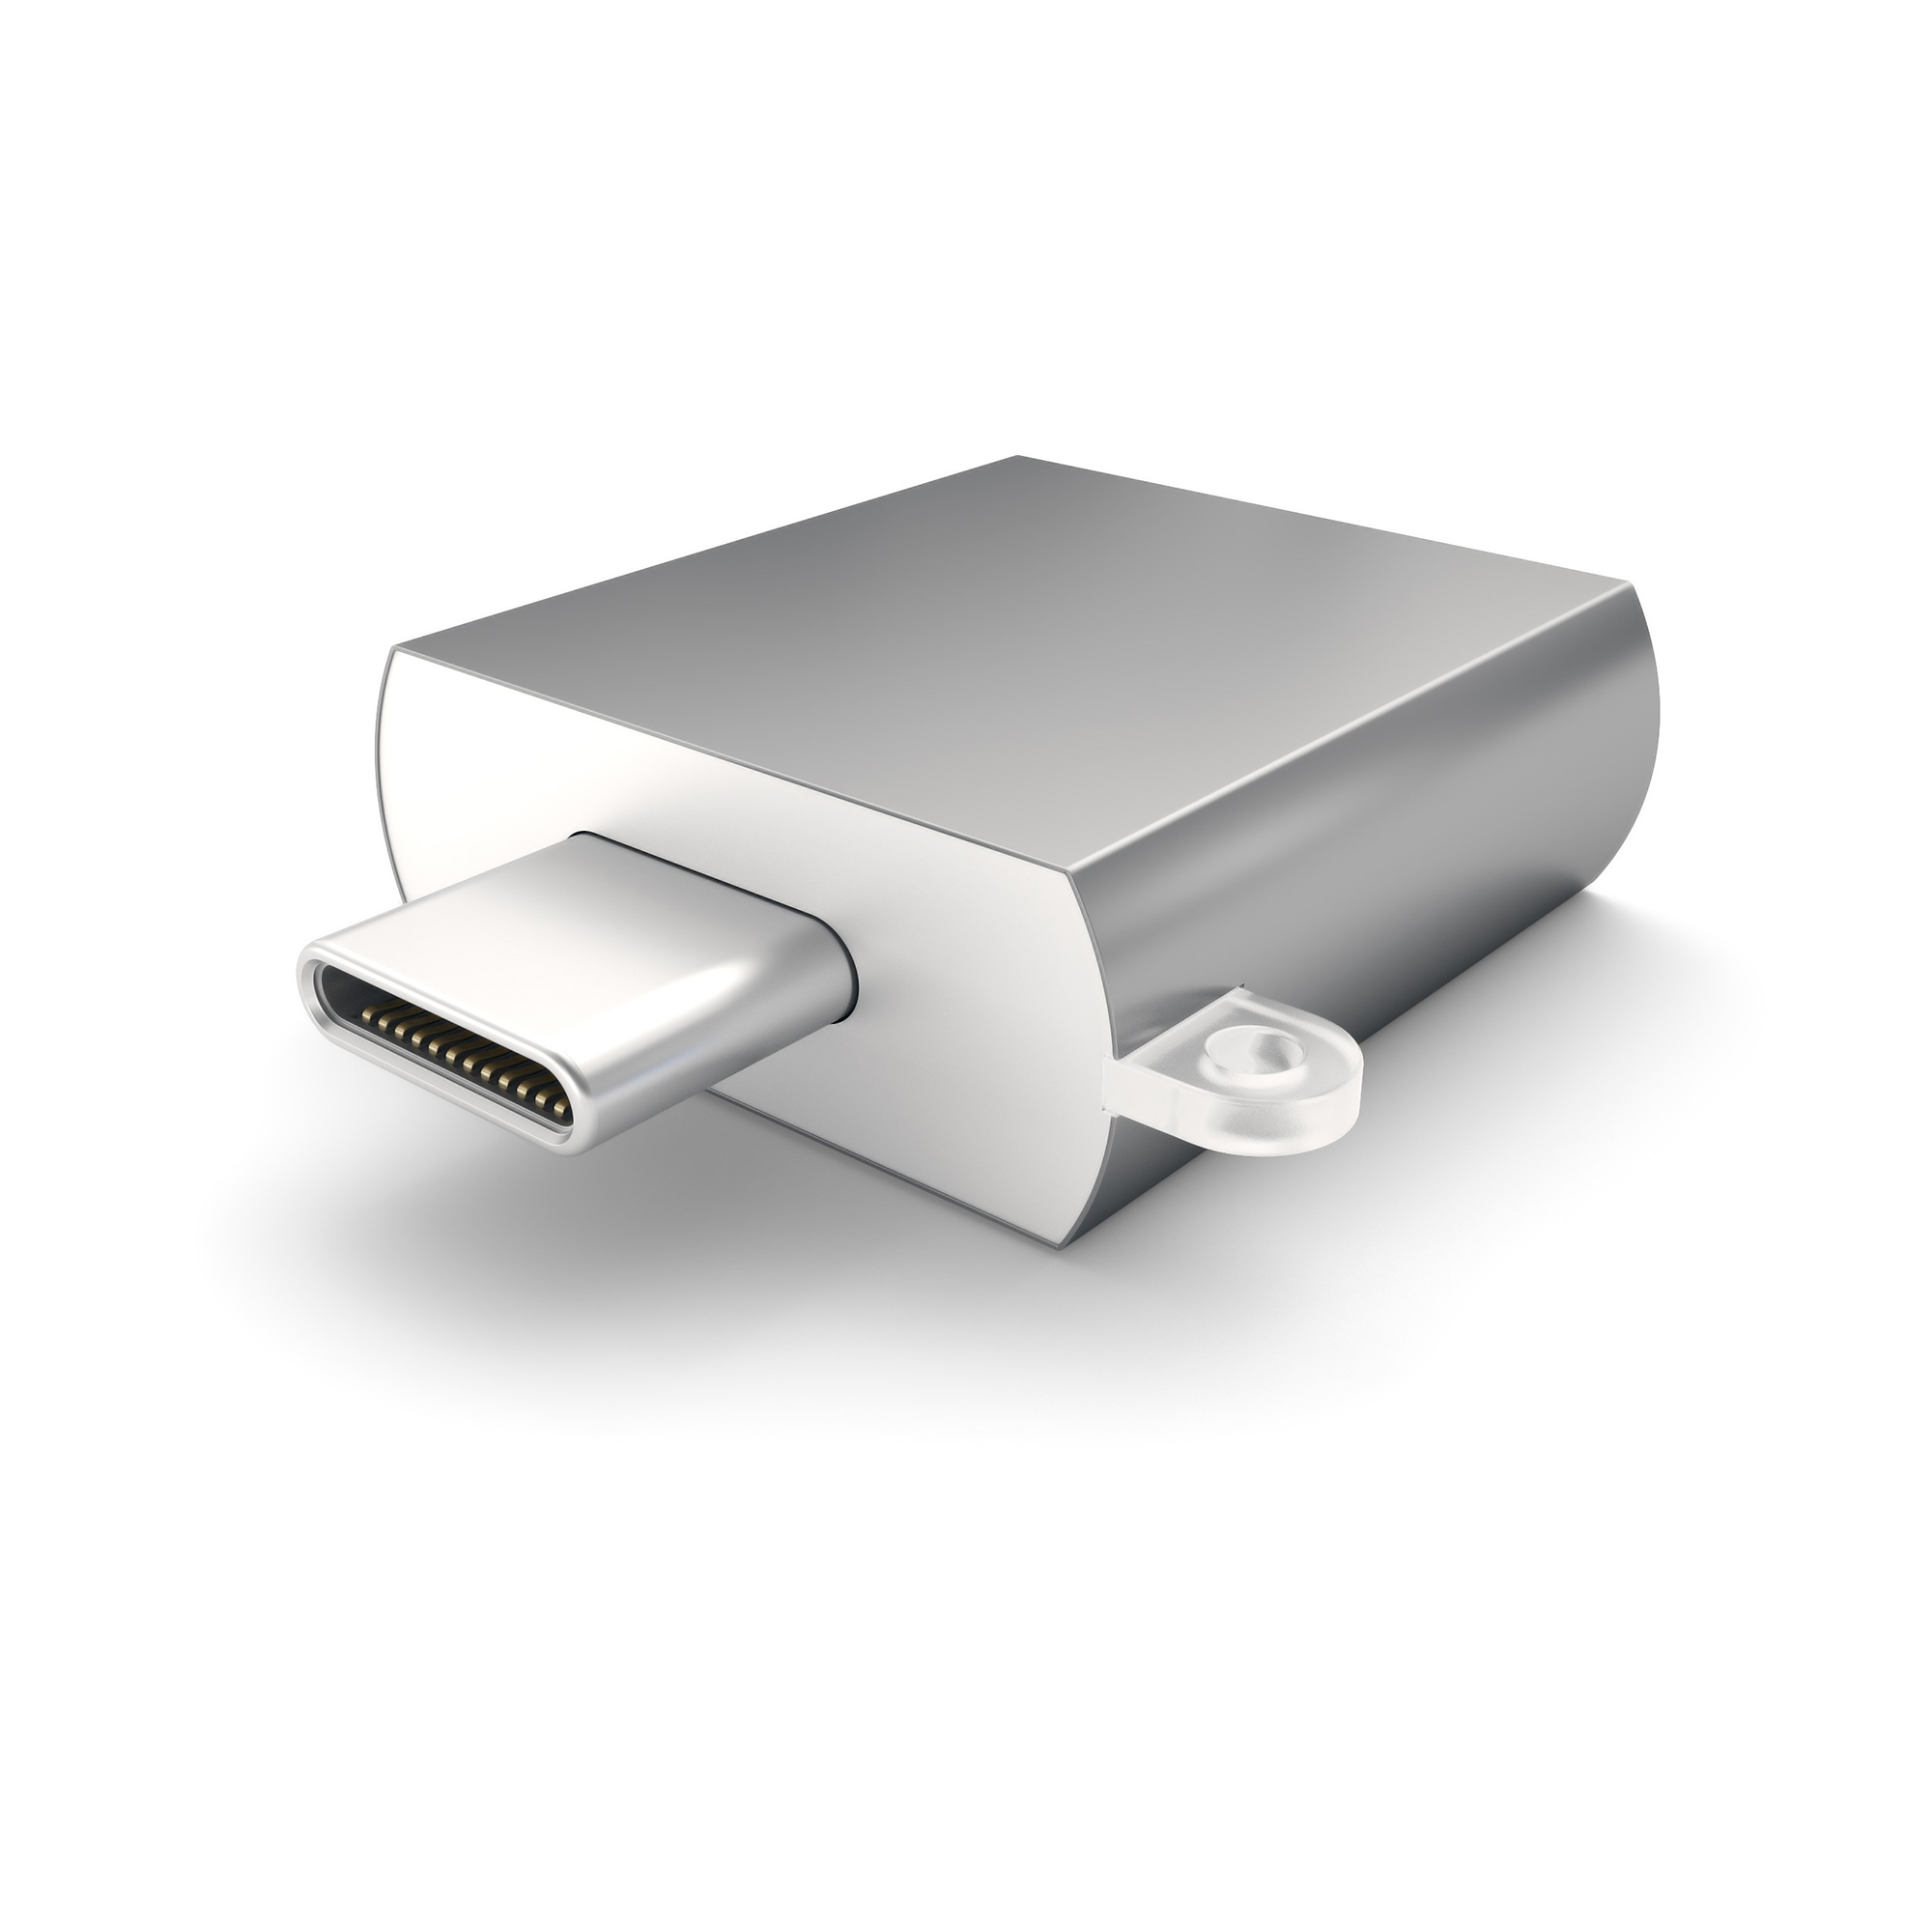 Адаптер Satechi USB 3.0 Type-C to USB 3.0 Type-A Space Gray ST-TCUAM адаптер satechi usb 3 0 type c to usb 3 0 type a space gray st tcuam